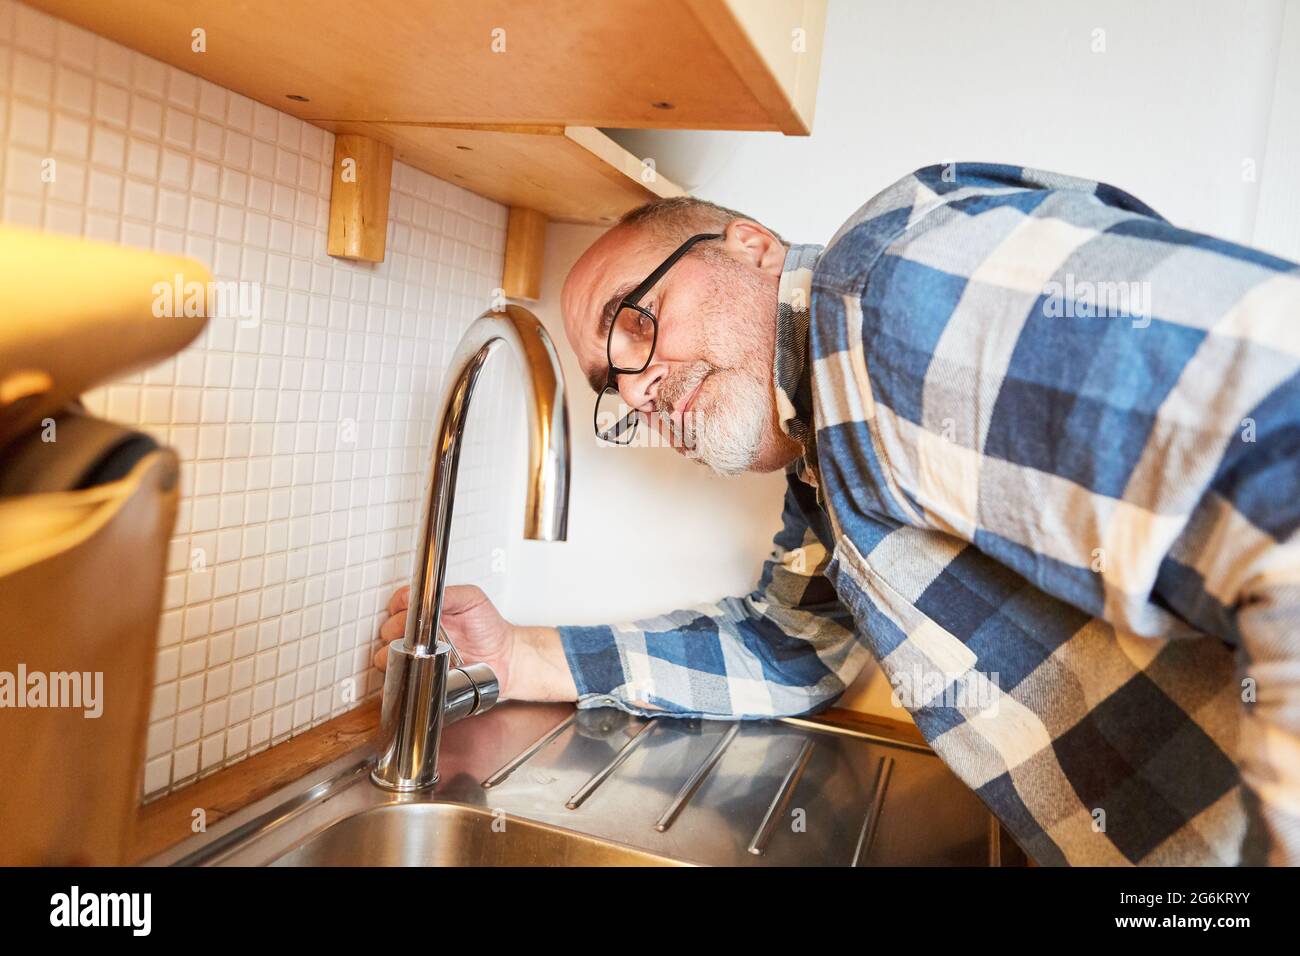 Handwerker als Klempner für Wasserhähne und Spülbecken in einer Küche Stockfoto